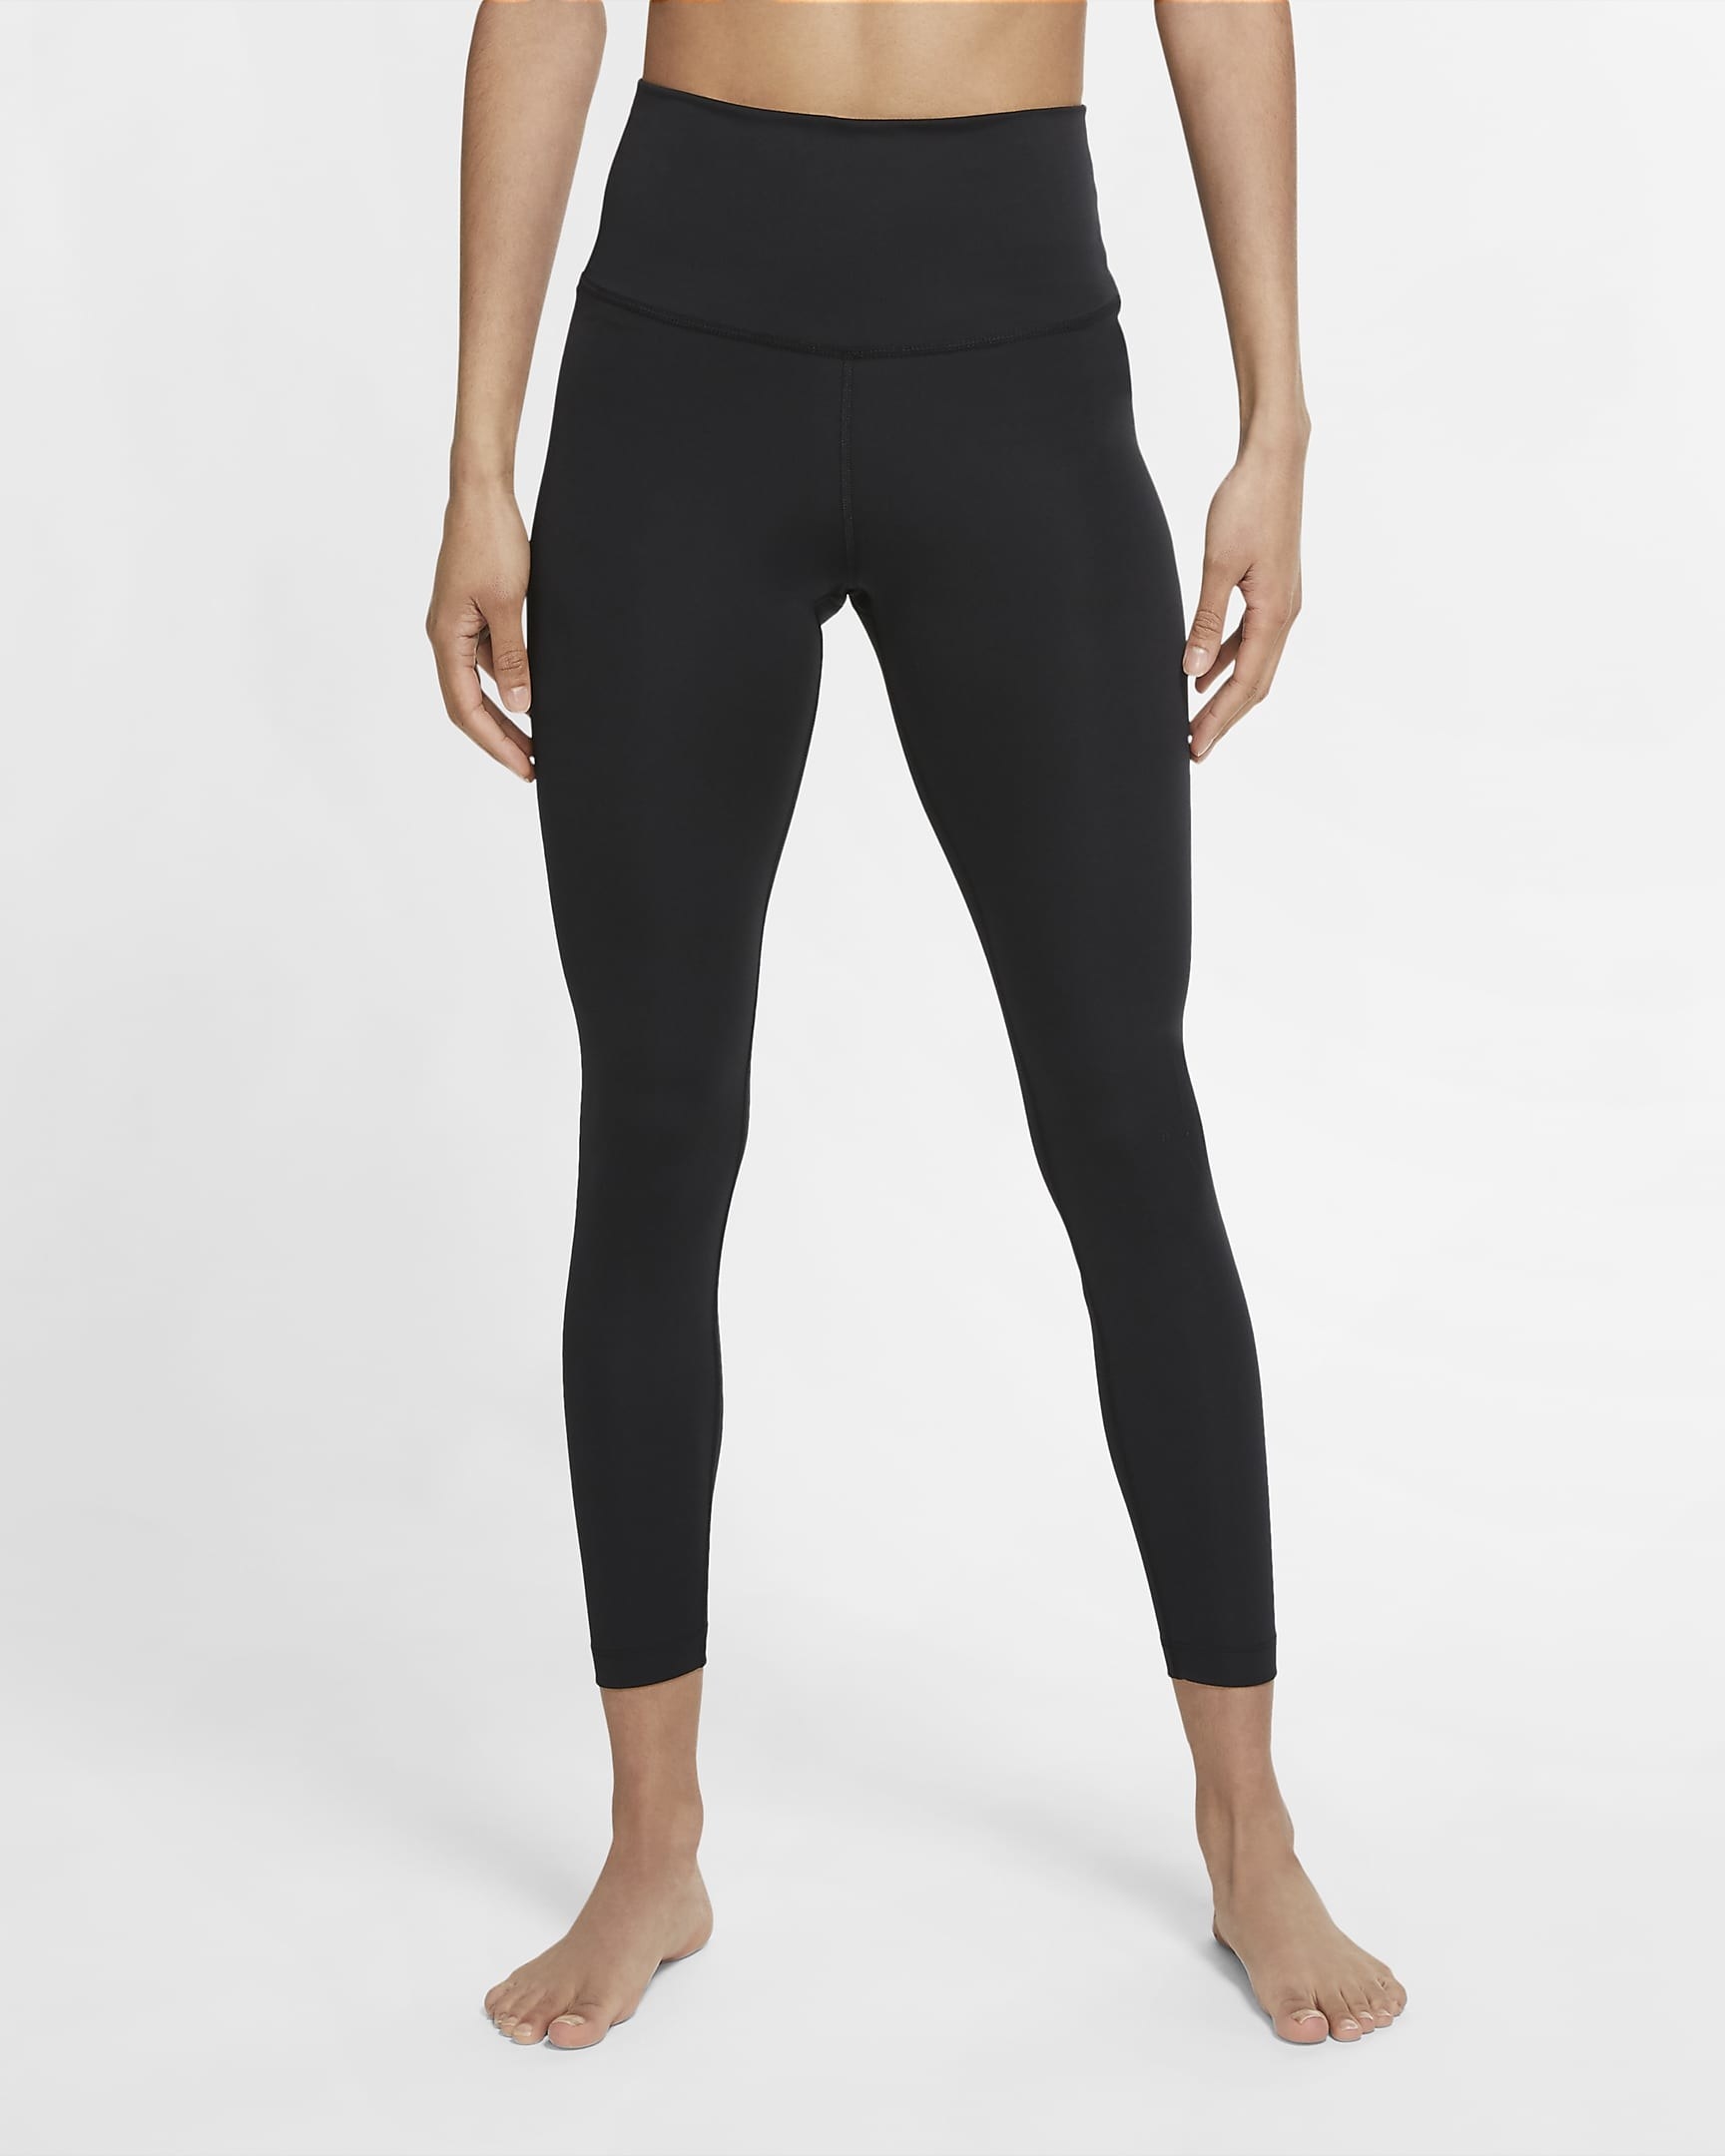 model in black yoga pants